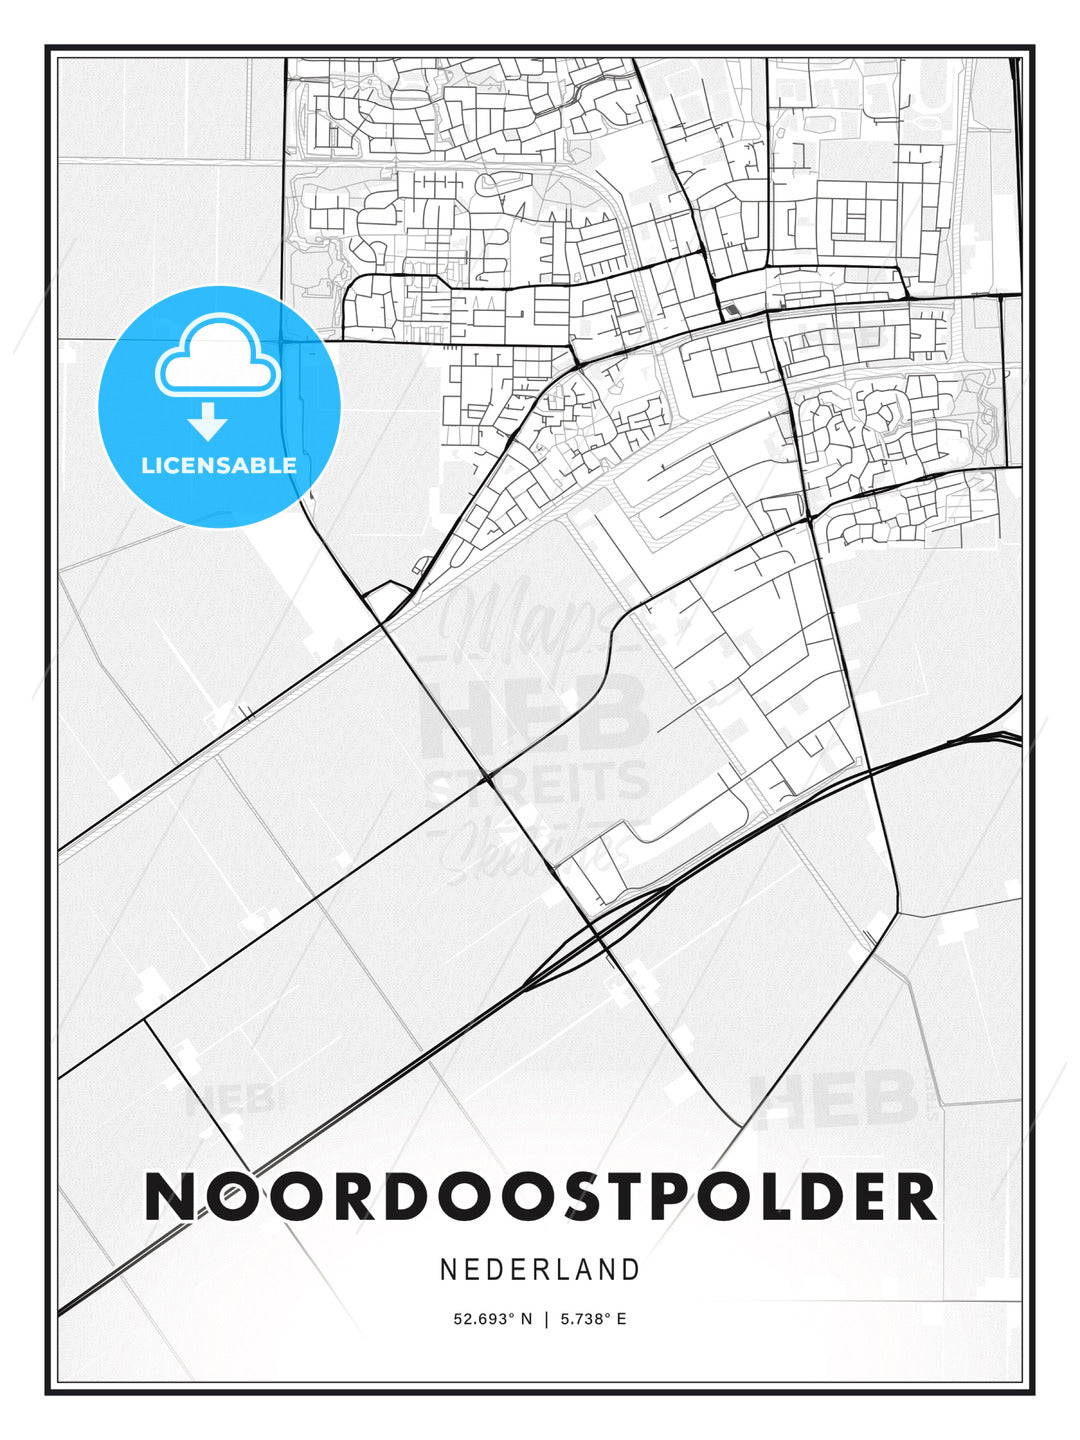 Noordoostpolder, Netherlands, Modern Print Template in Various Formats - HEBSTREITS Sketches